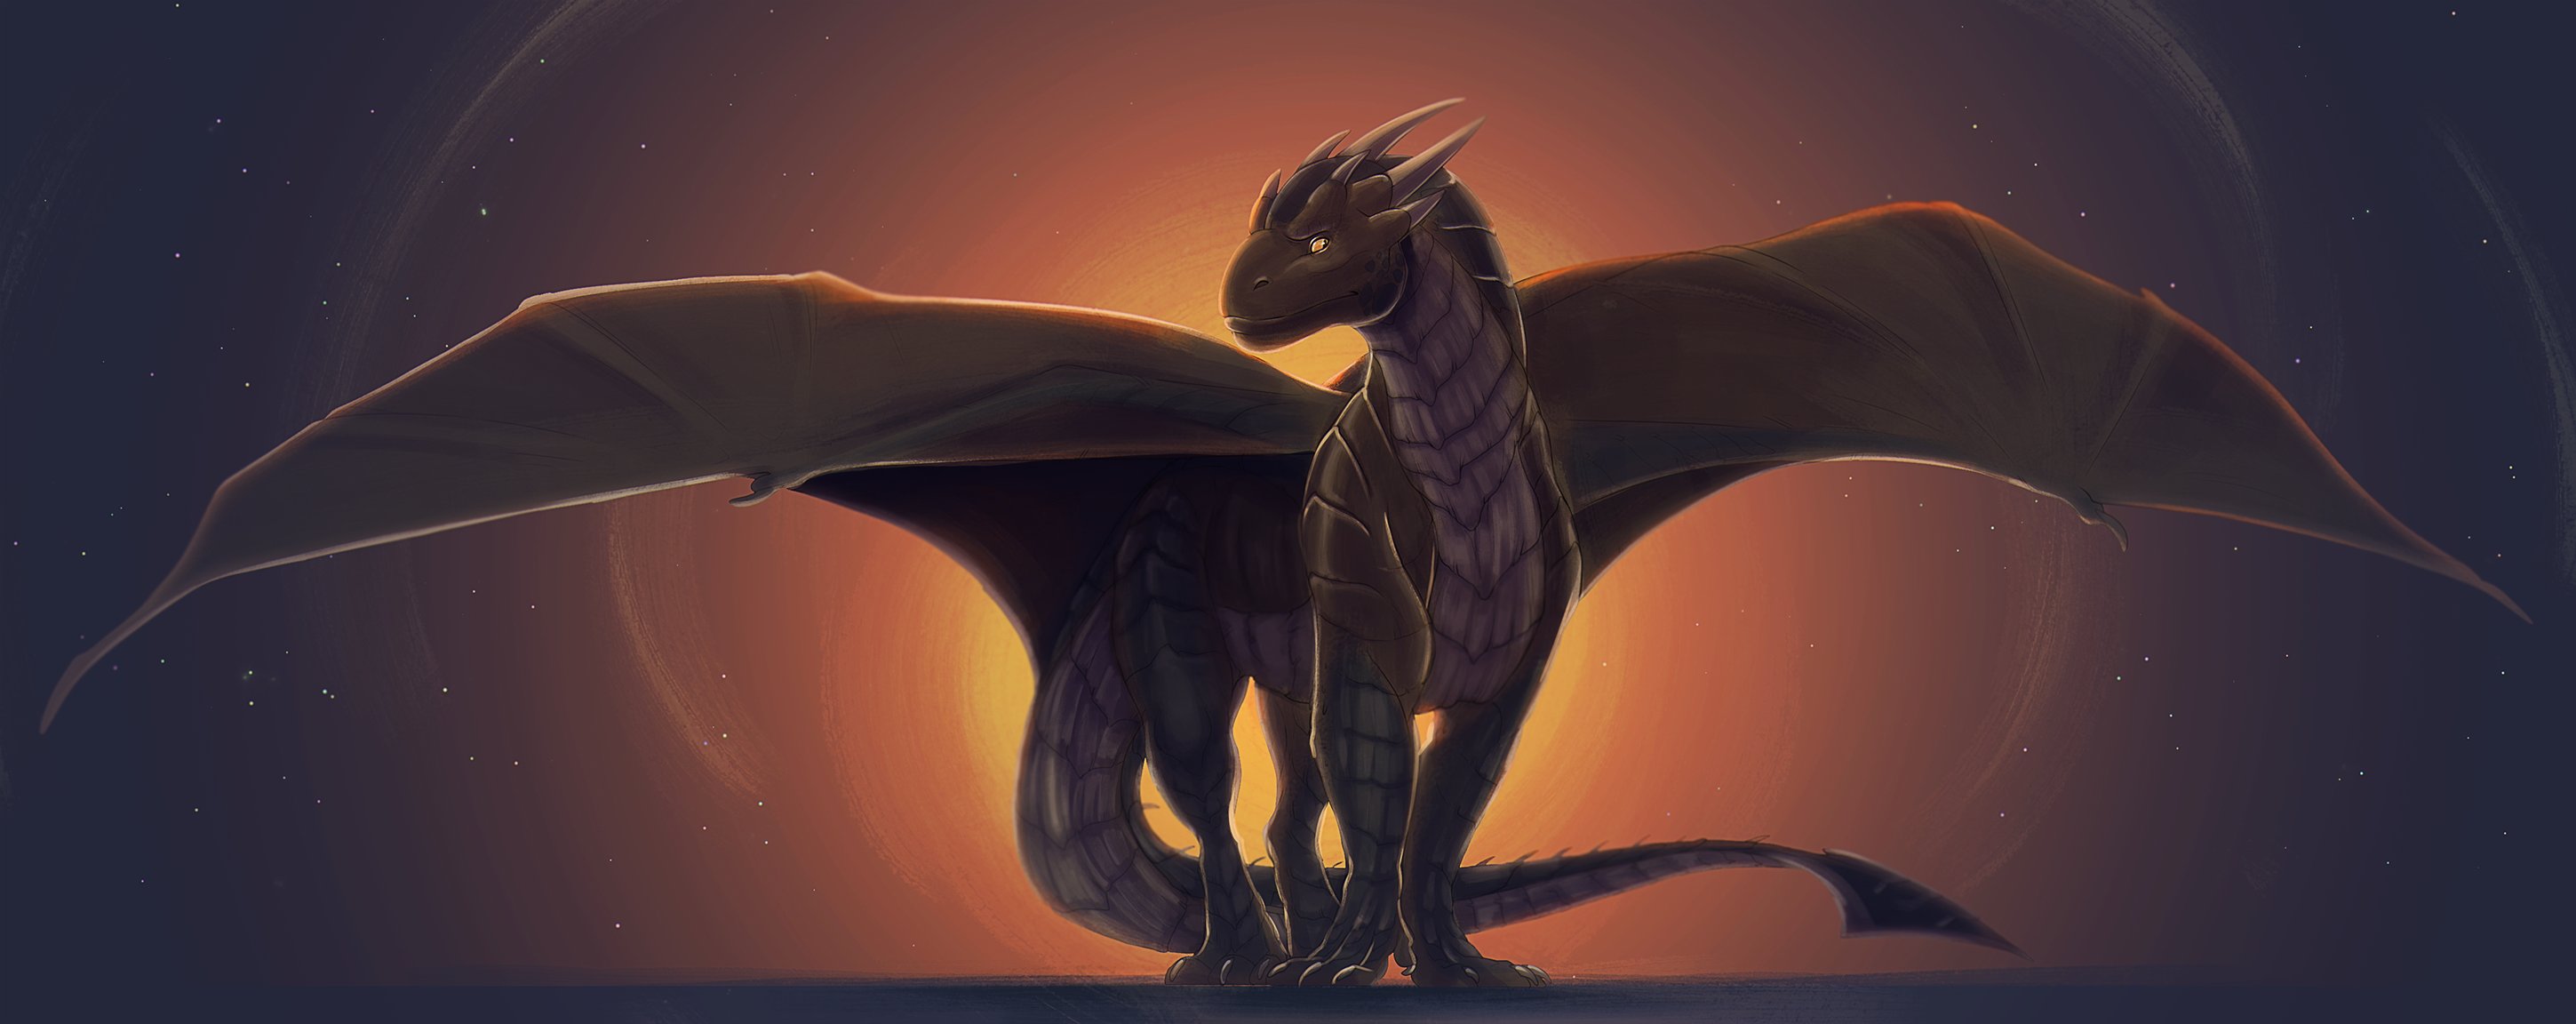 Dragonheart | Wings of Fire Fanon Wiki | Fandom